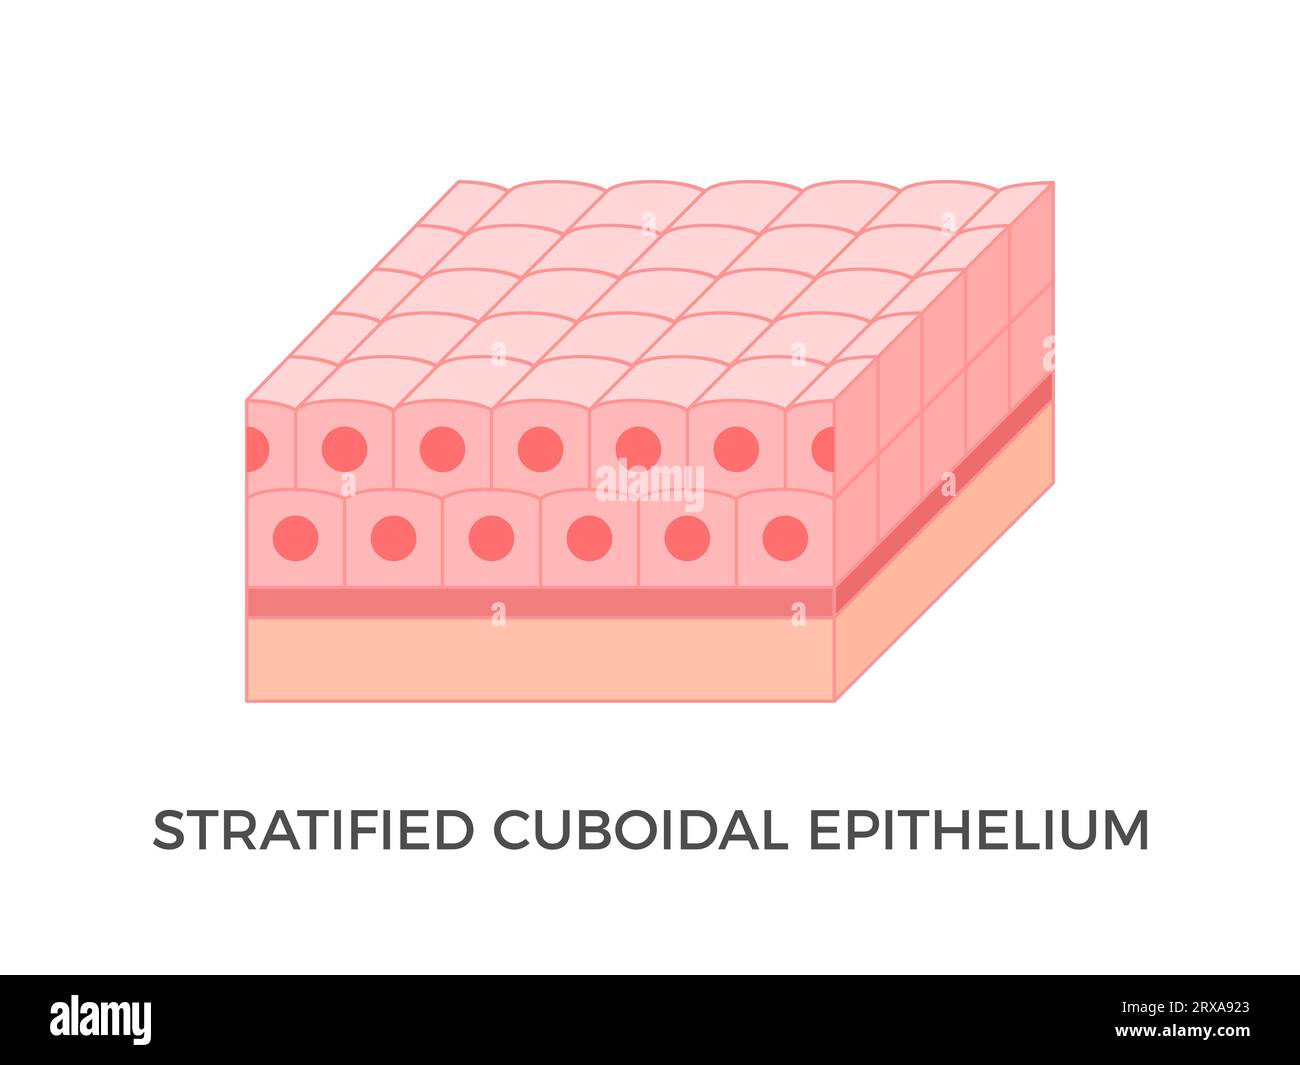 Epitelio cuboidale stratificato. Tipi di tessuto epiteliale. Strati multipli di cellule simili a cubi. Si verifica nei dotti escretori delle ghiandole sudoripare. Vettore Illustrazione Vettoriale